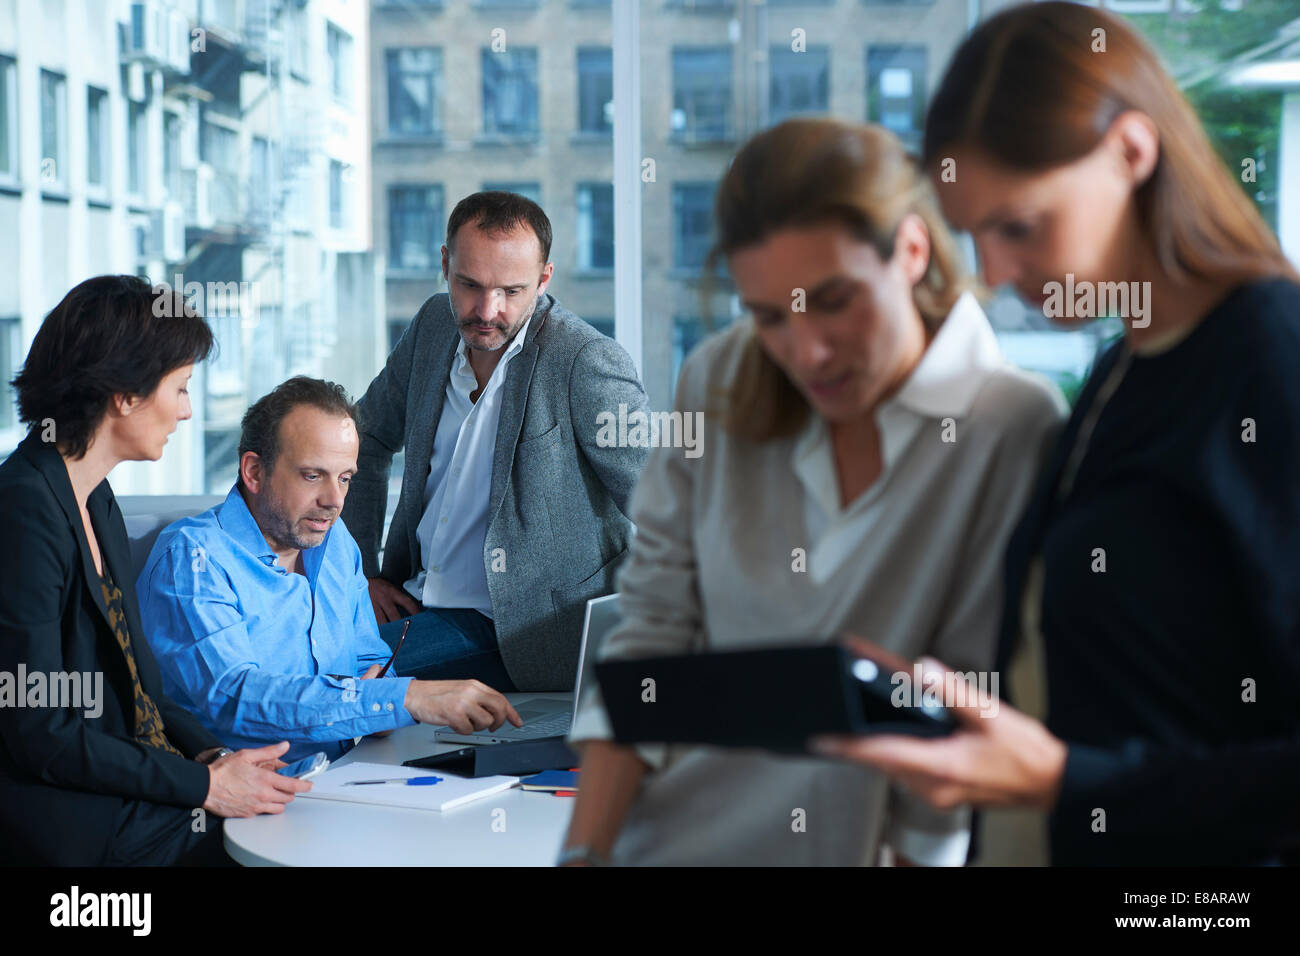 Cinco mujeres y hombres que trabajan en la oficina ajetreada Foto de stock